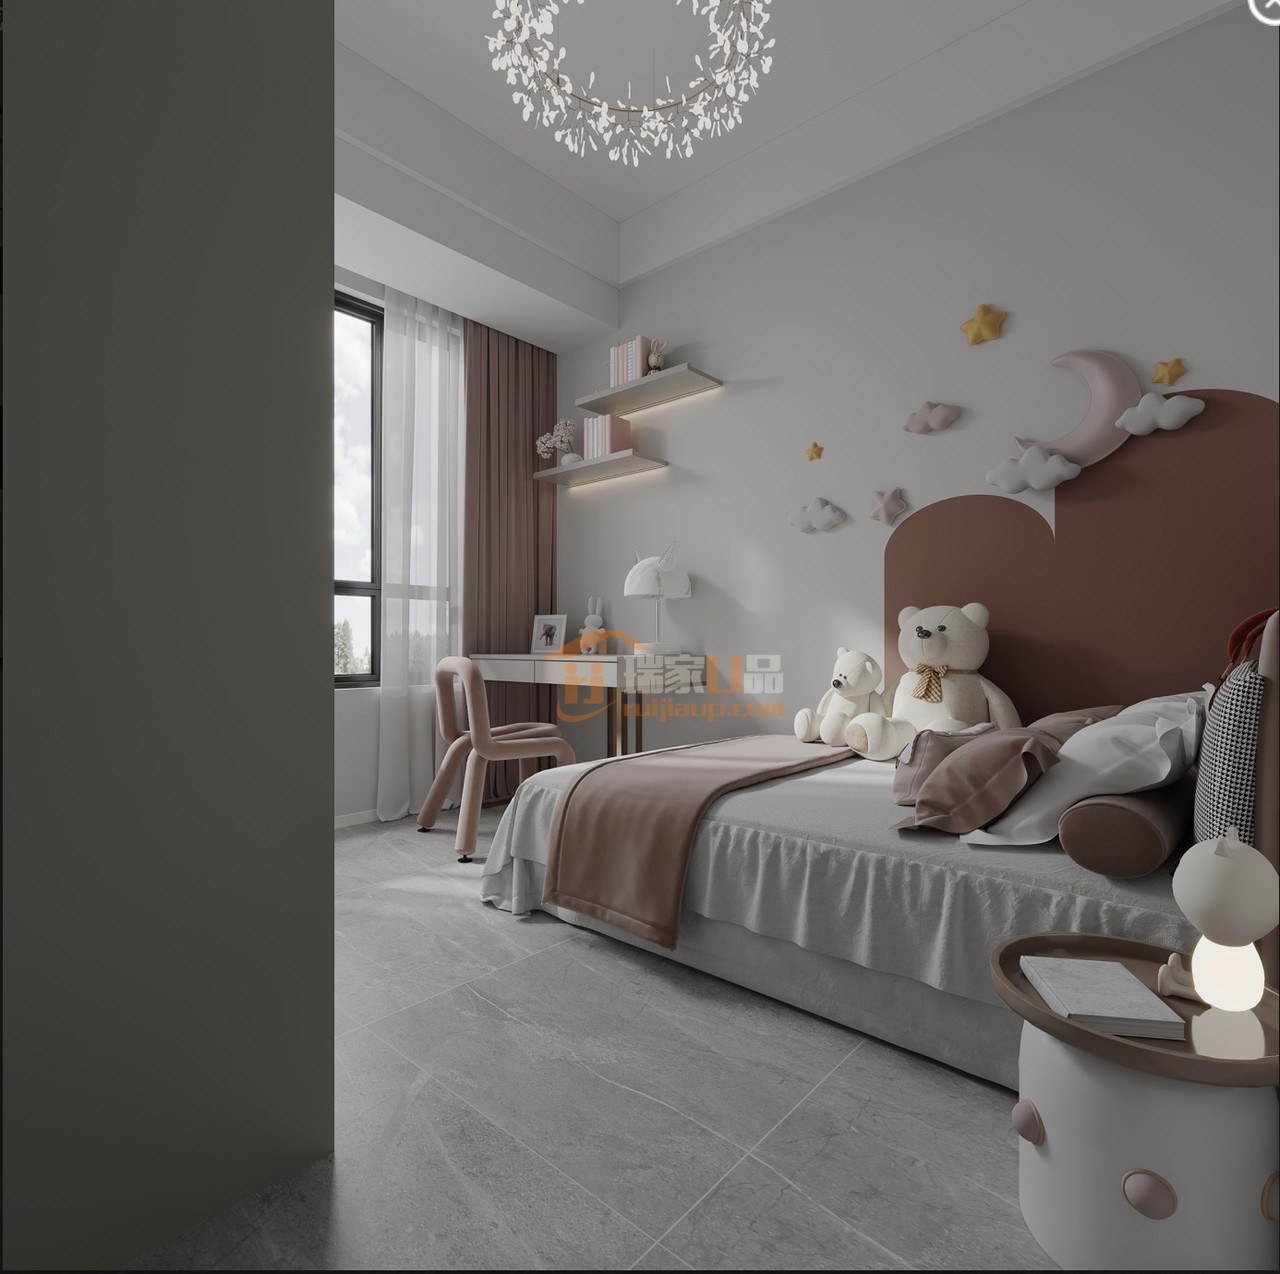 精心布置的可爱儿童房，自在活泼的舒适灵动感
明快轻松愉悦的色彩墙面设计
柔粉色的椅子与软饰
让空间带着丝丝梦幻，悠若安然